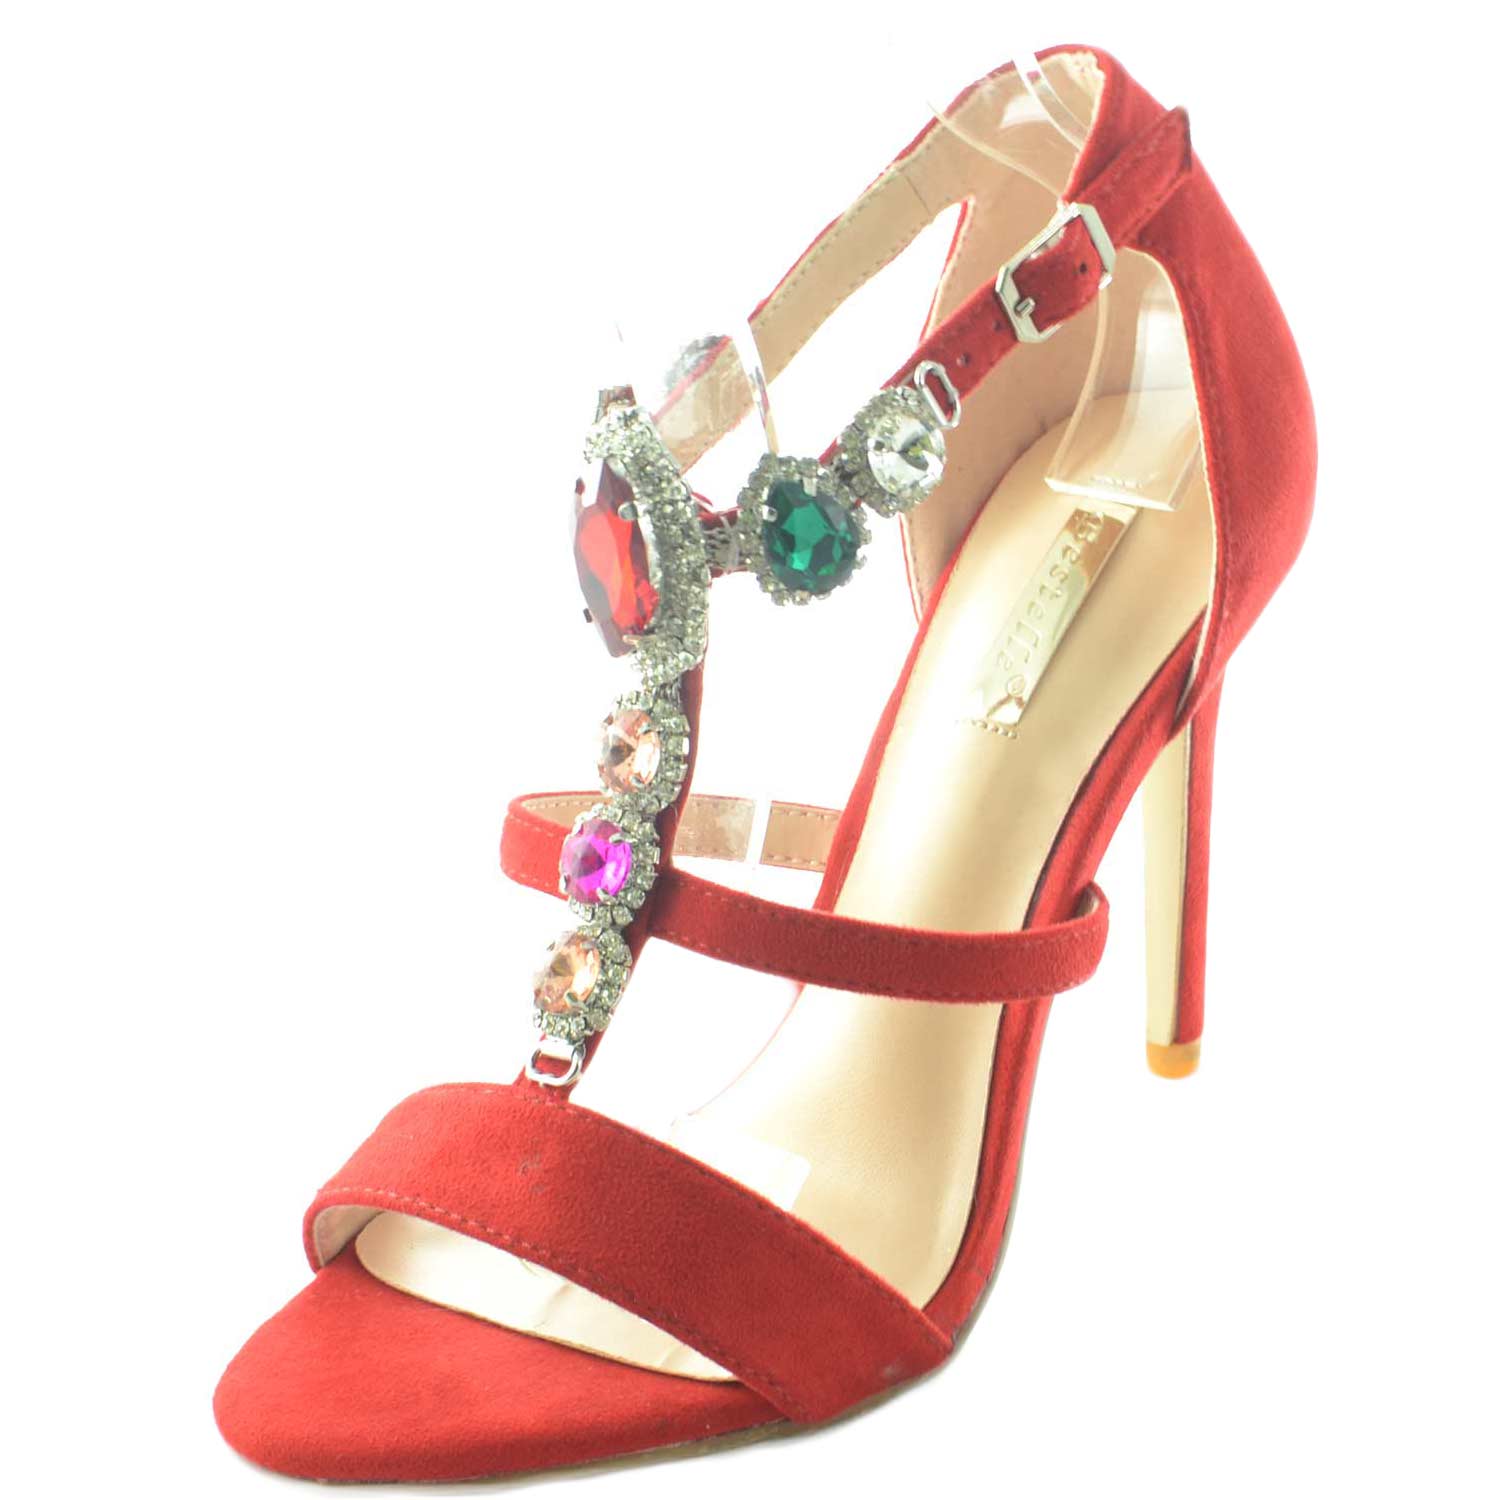 Sandalo rosso alto donna gioiello con tacco a spillo linea luxury pietre frontali colorate a forma di gemme